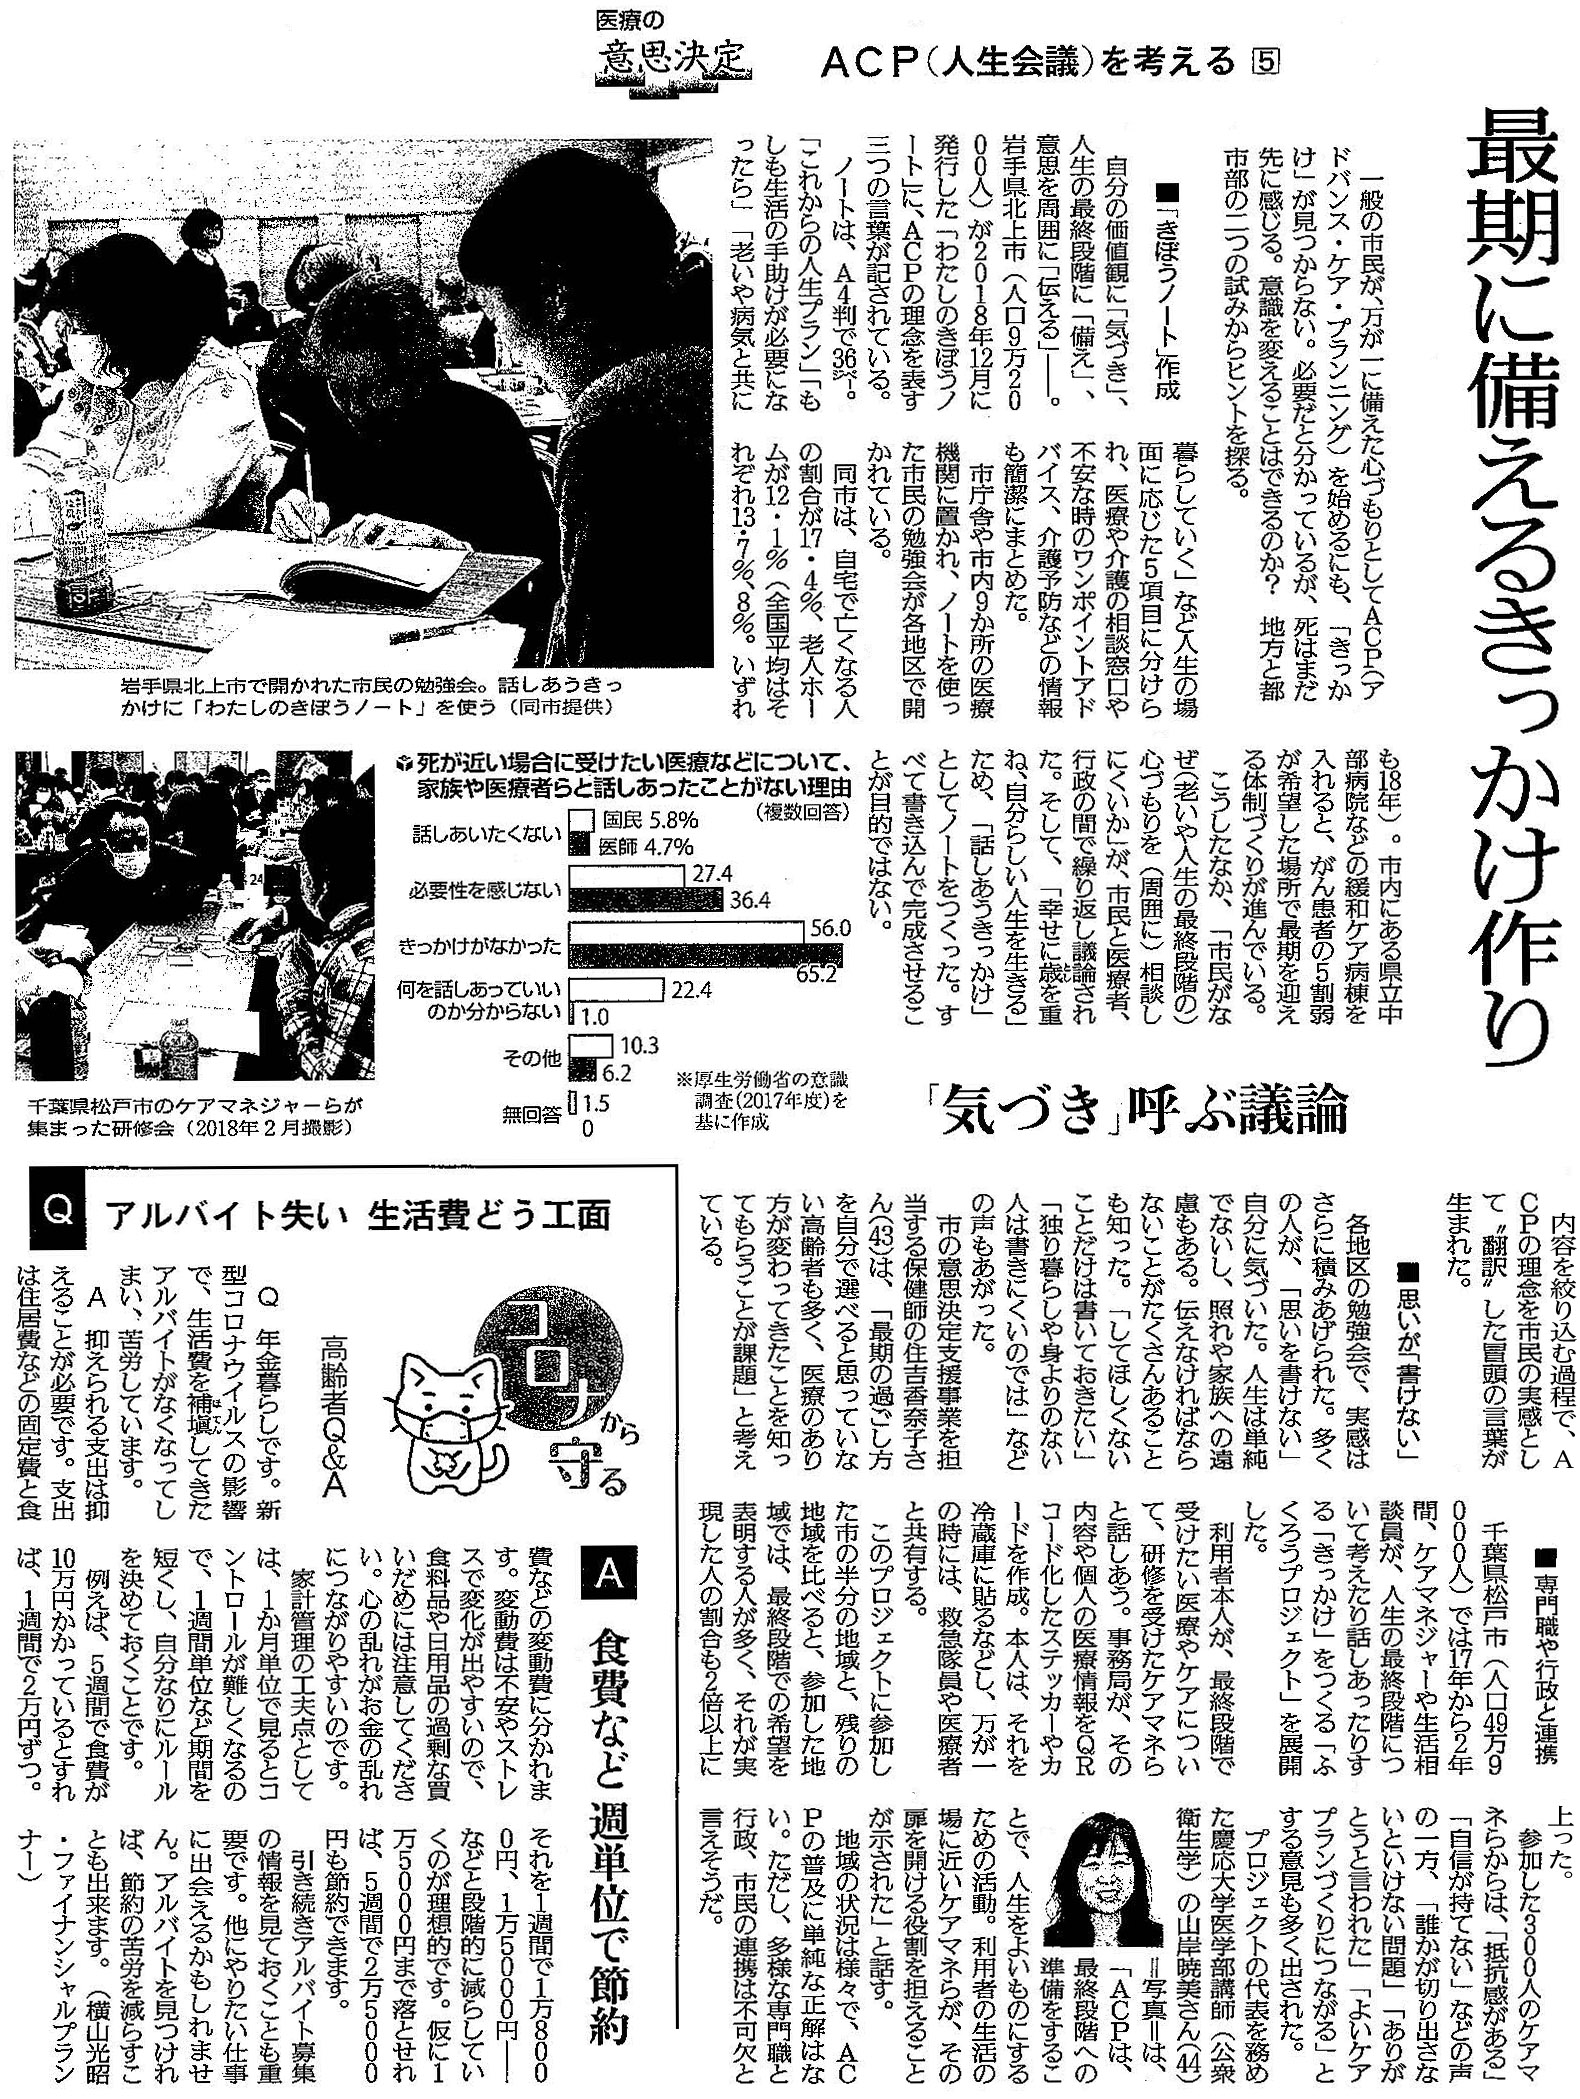 読売新聞 2020年5月26日掲載記事